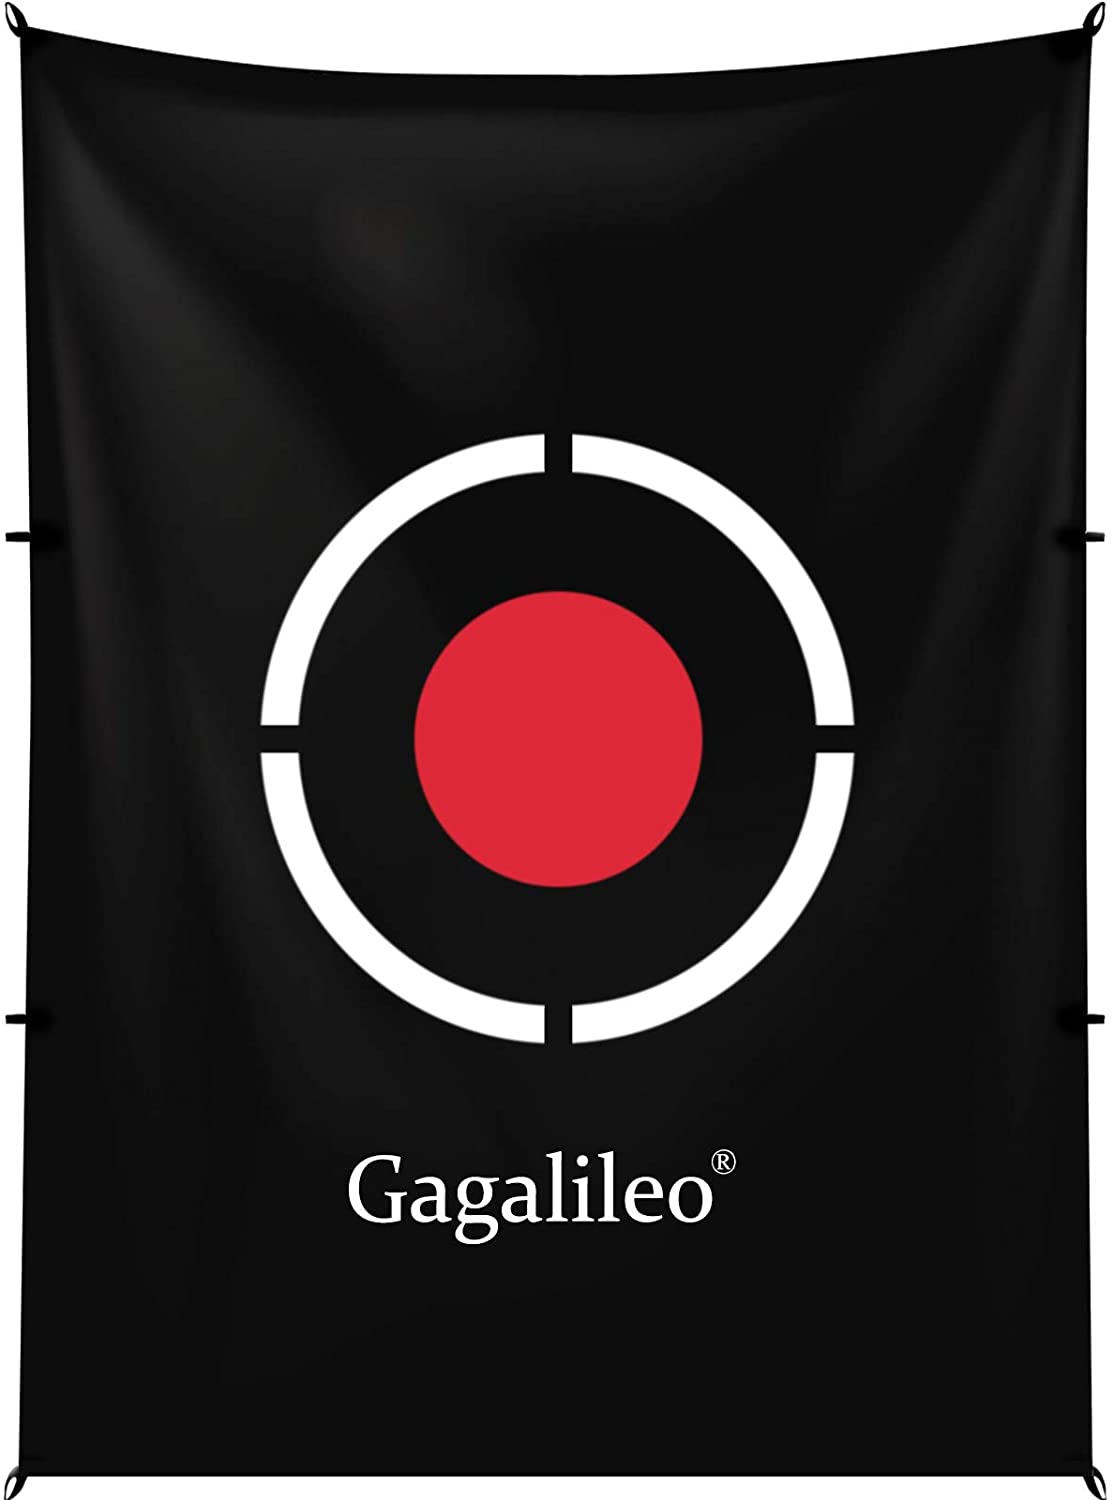 Galileo Practice Backstop Target Backyard Driving PVC Black Circle Style Target Black| Tamaño 5'x6'